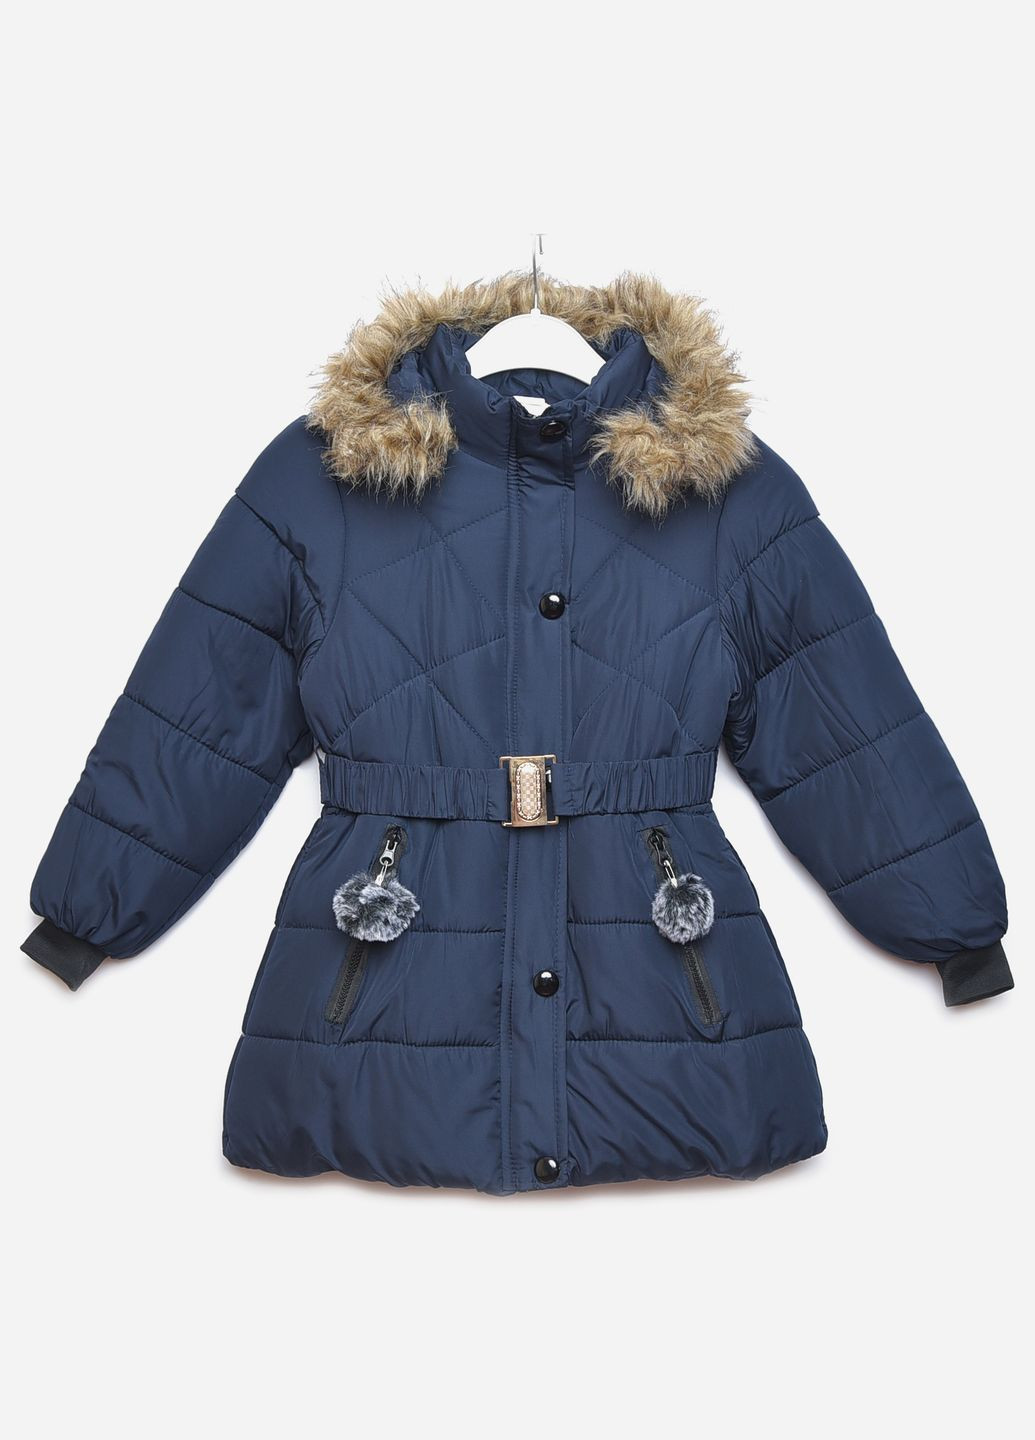 Темно-синяя зимняя куртка детская зимняя для девочки темно-синего цвета Let's Shop